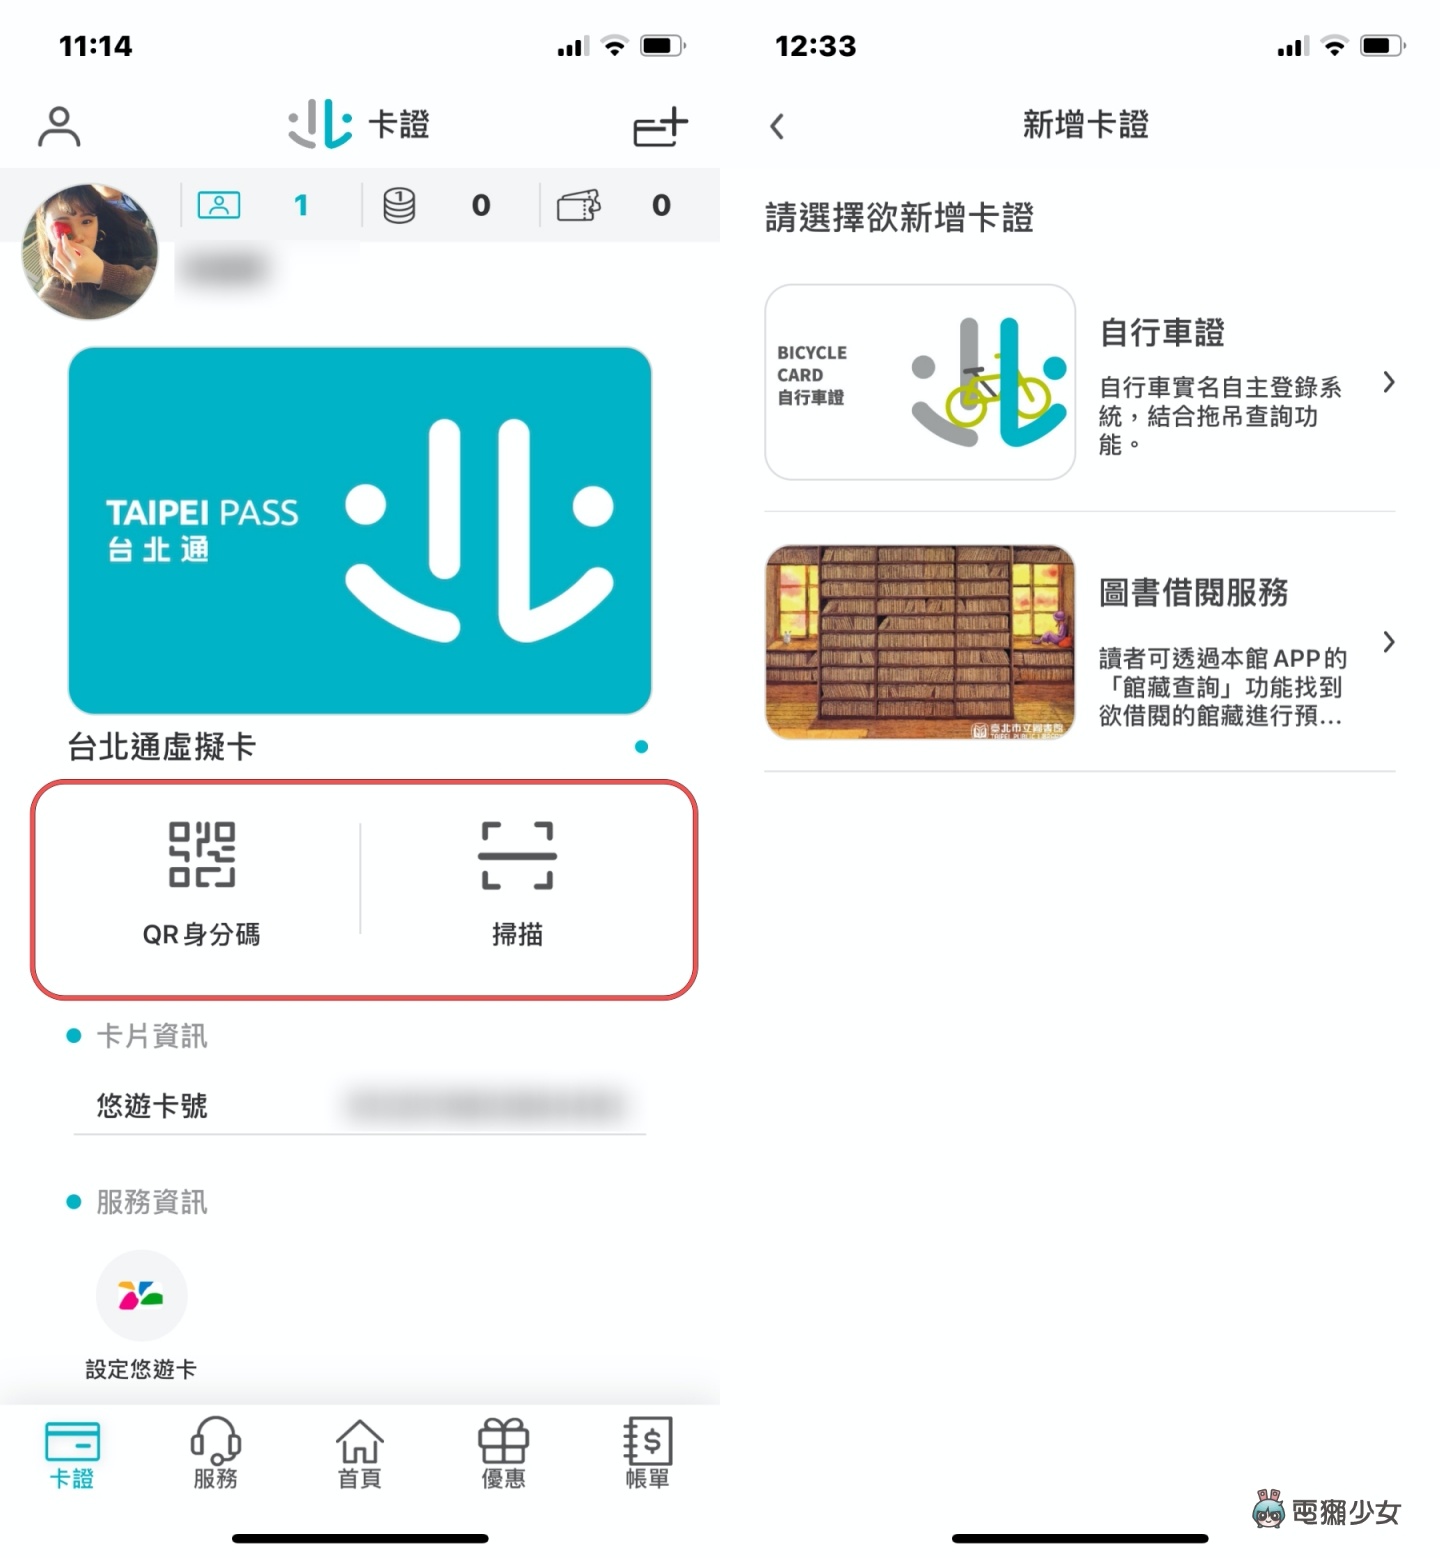 『 台北通 App 』製作你的專屬 QR-Code！實聯制進出公家場所更方便 iOS/Android